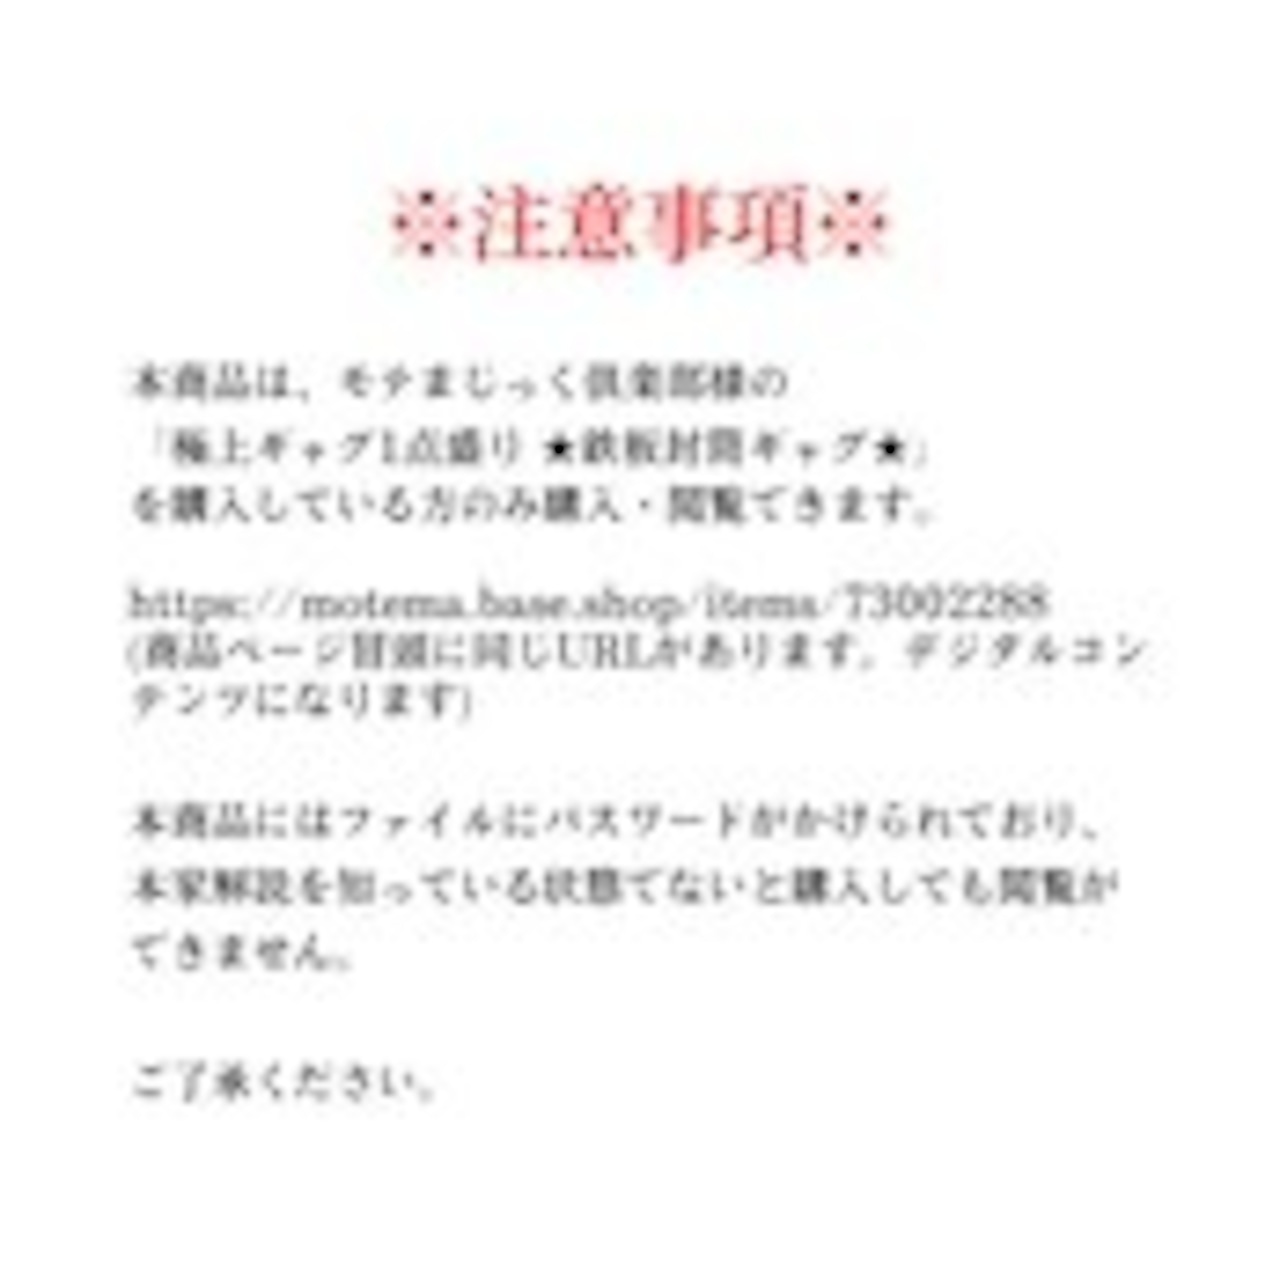 鉄板封筒+α by hanasanJr 【8/19(土) 13時より販売開始！！】